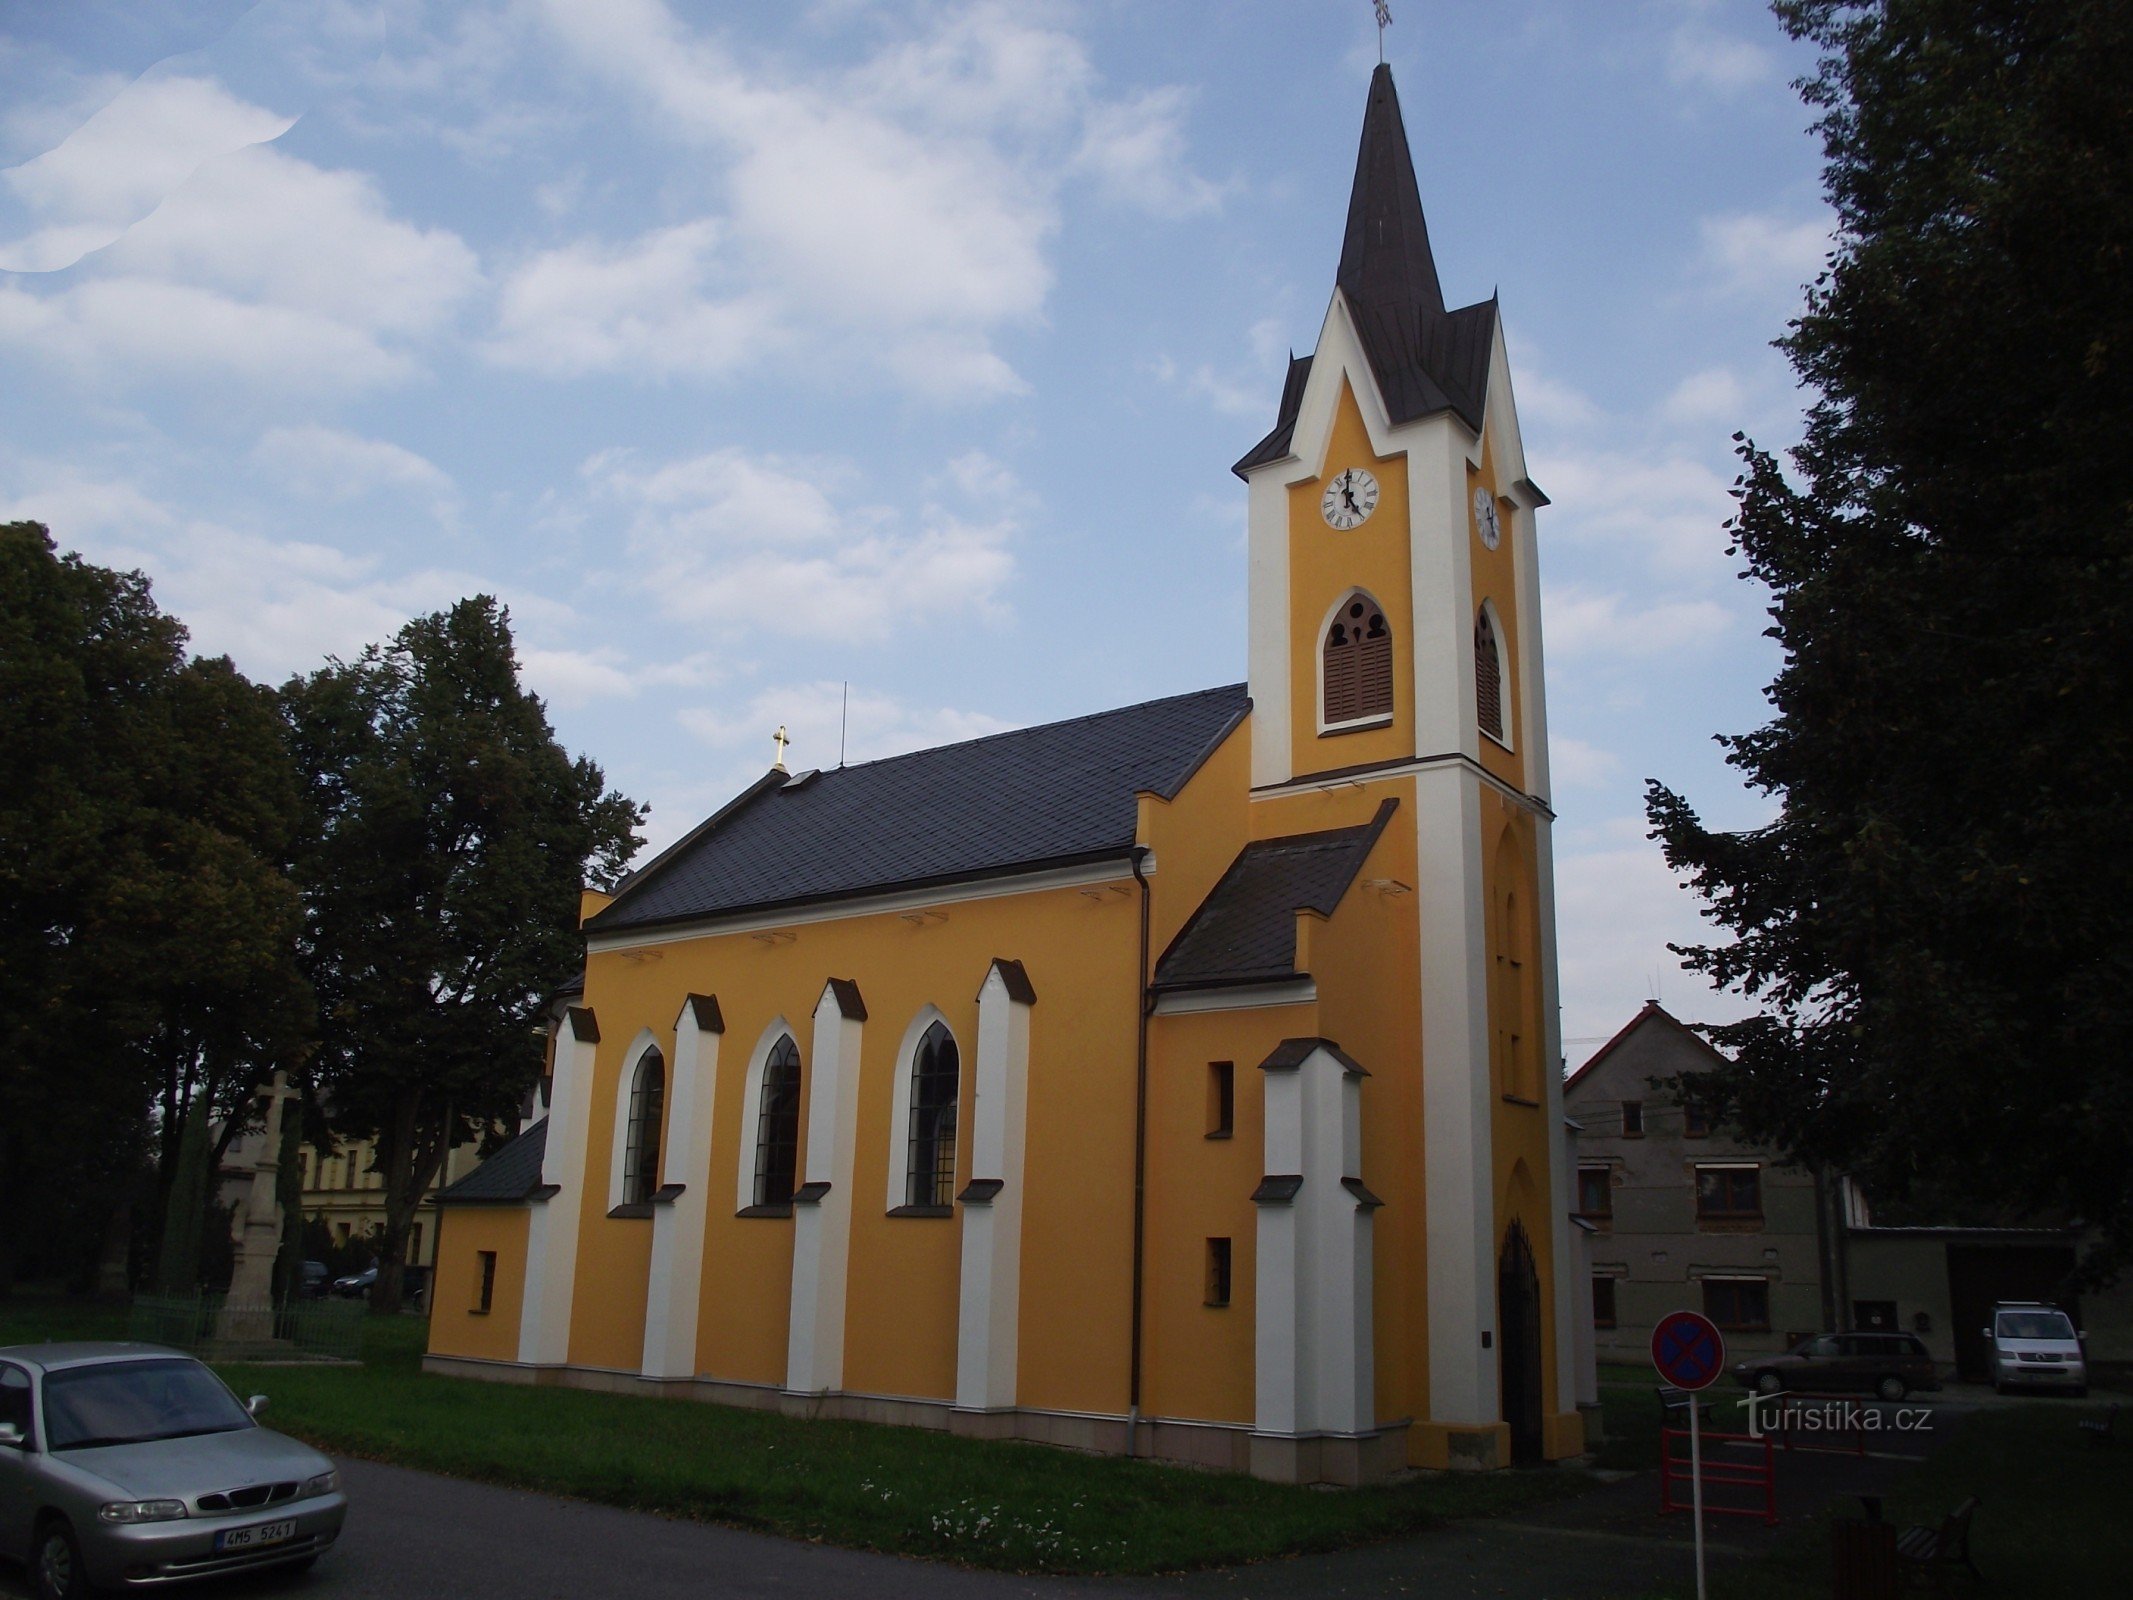 Želechovice (pri Uničovu) - kapela sv. Cirila in Metoda